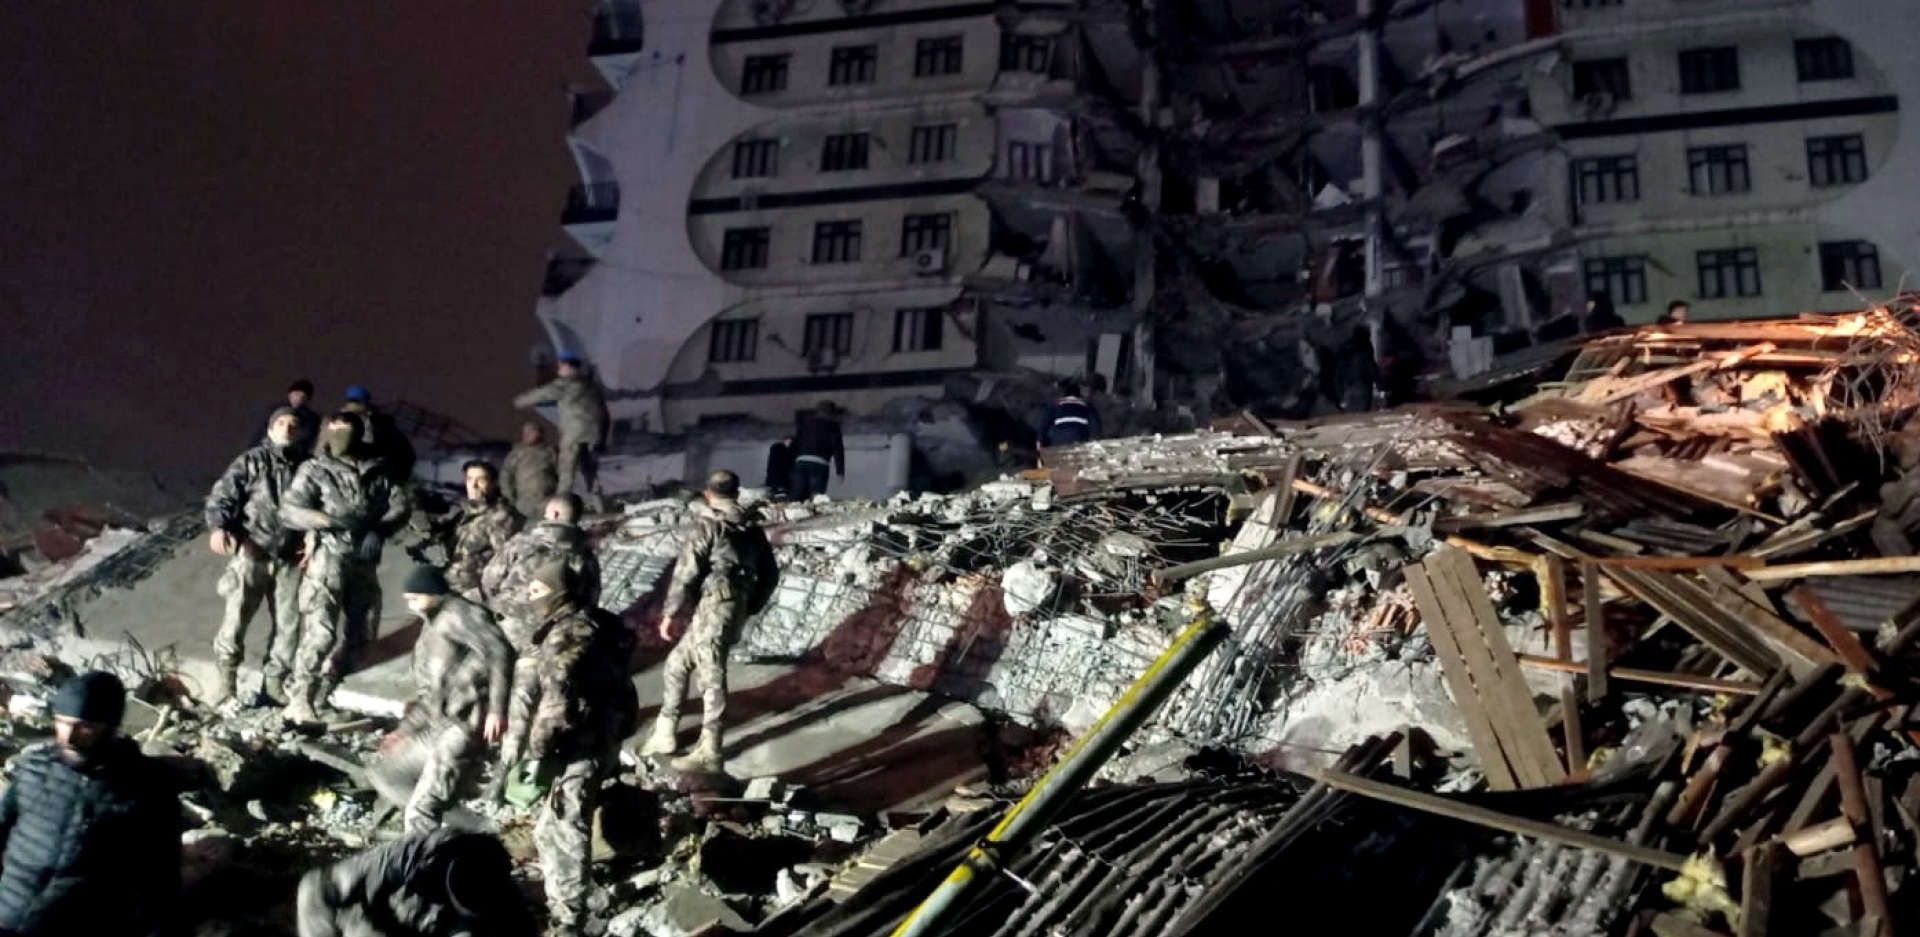 Σεισμός στην Τουρκία: Δραματικές εικόνες των φωτογραφικών πρακτορείων